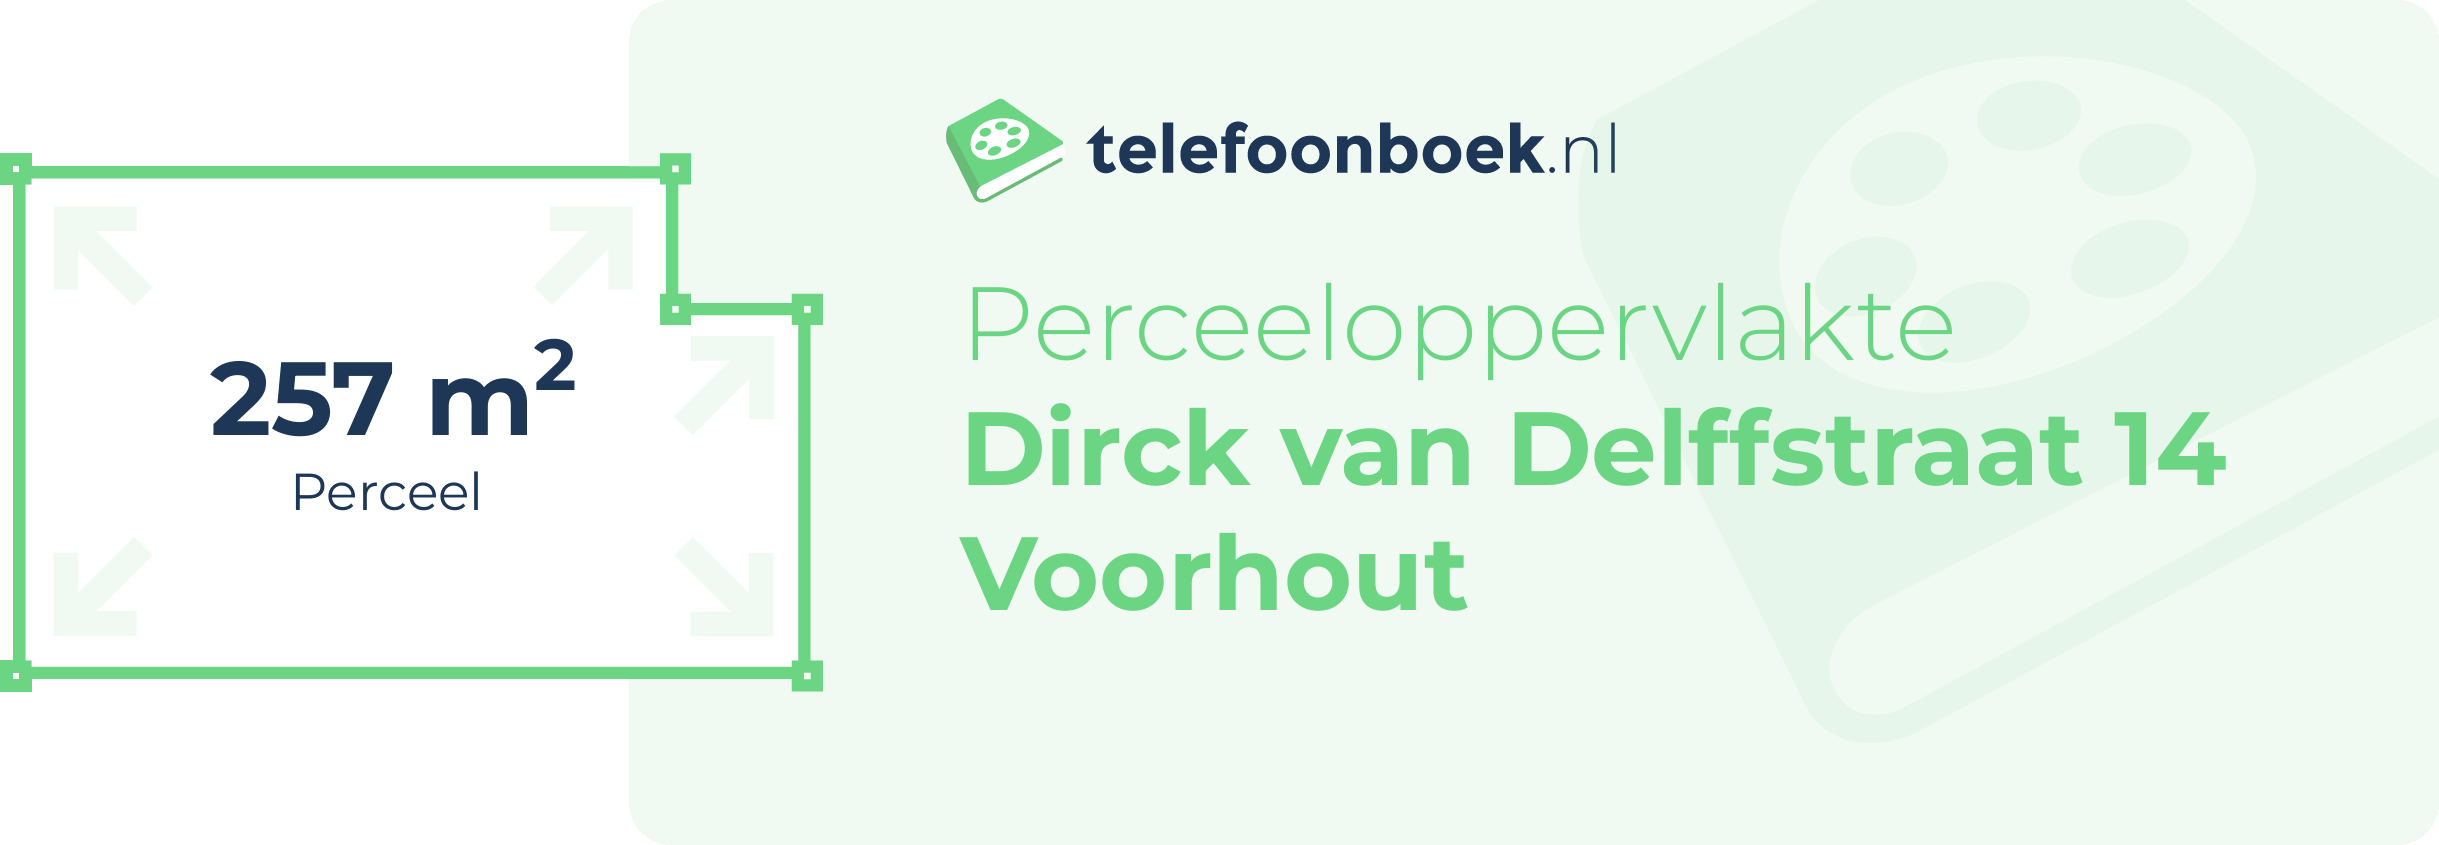 Perceeloppervlakte Dirck Van Delffstraat 14 Voorhout